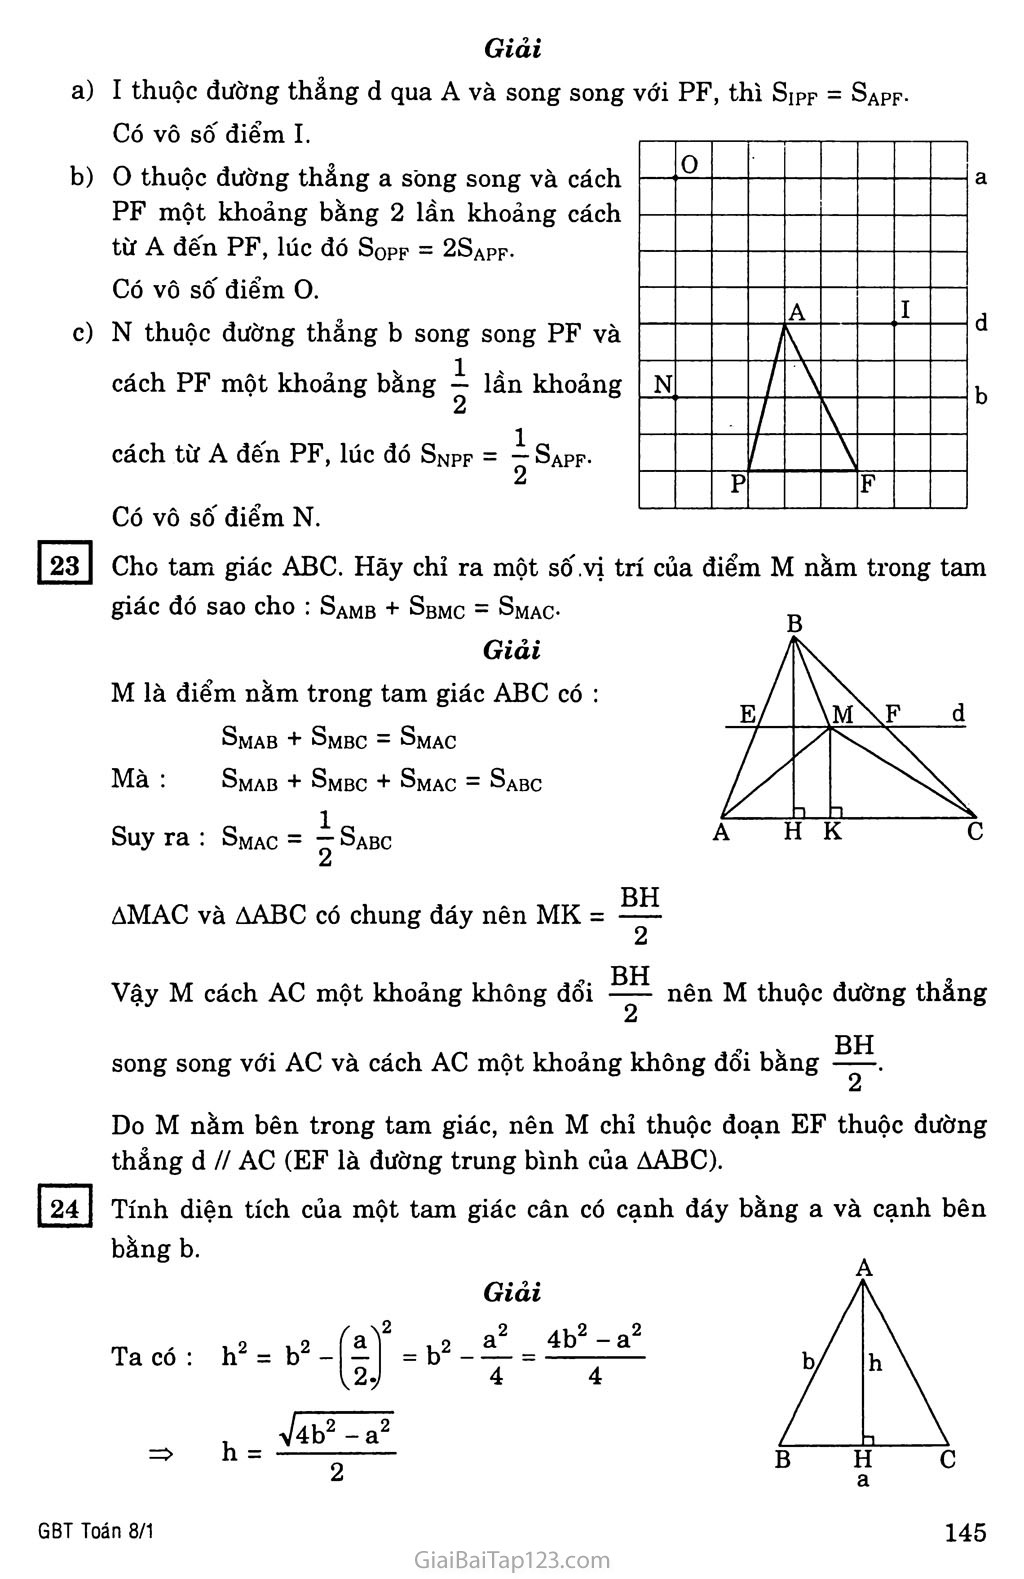 Giải bài tập Toán 8 §3. Diện tích tam giác